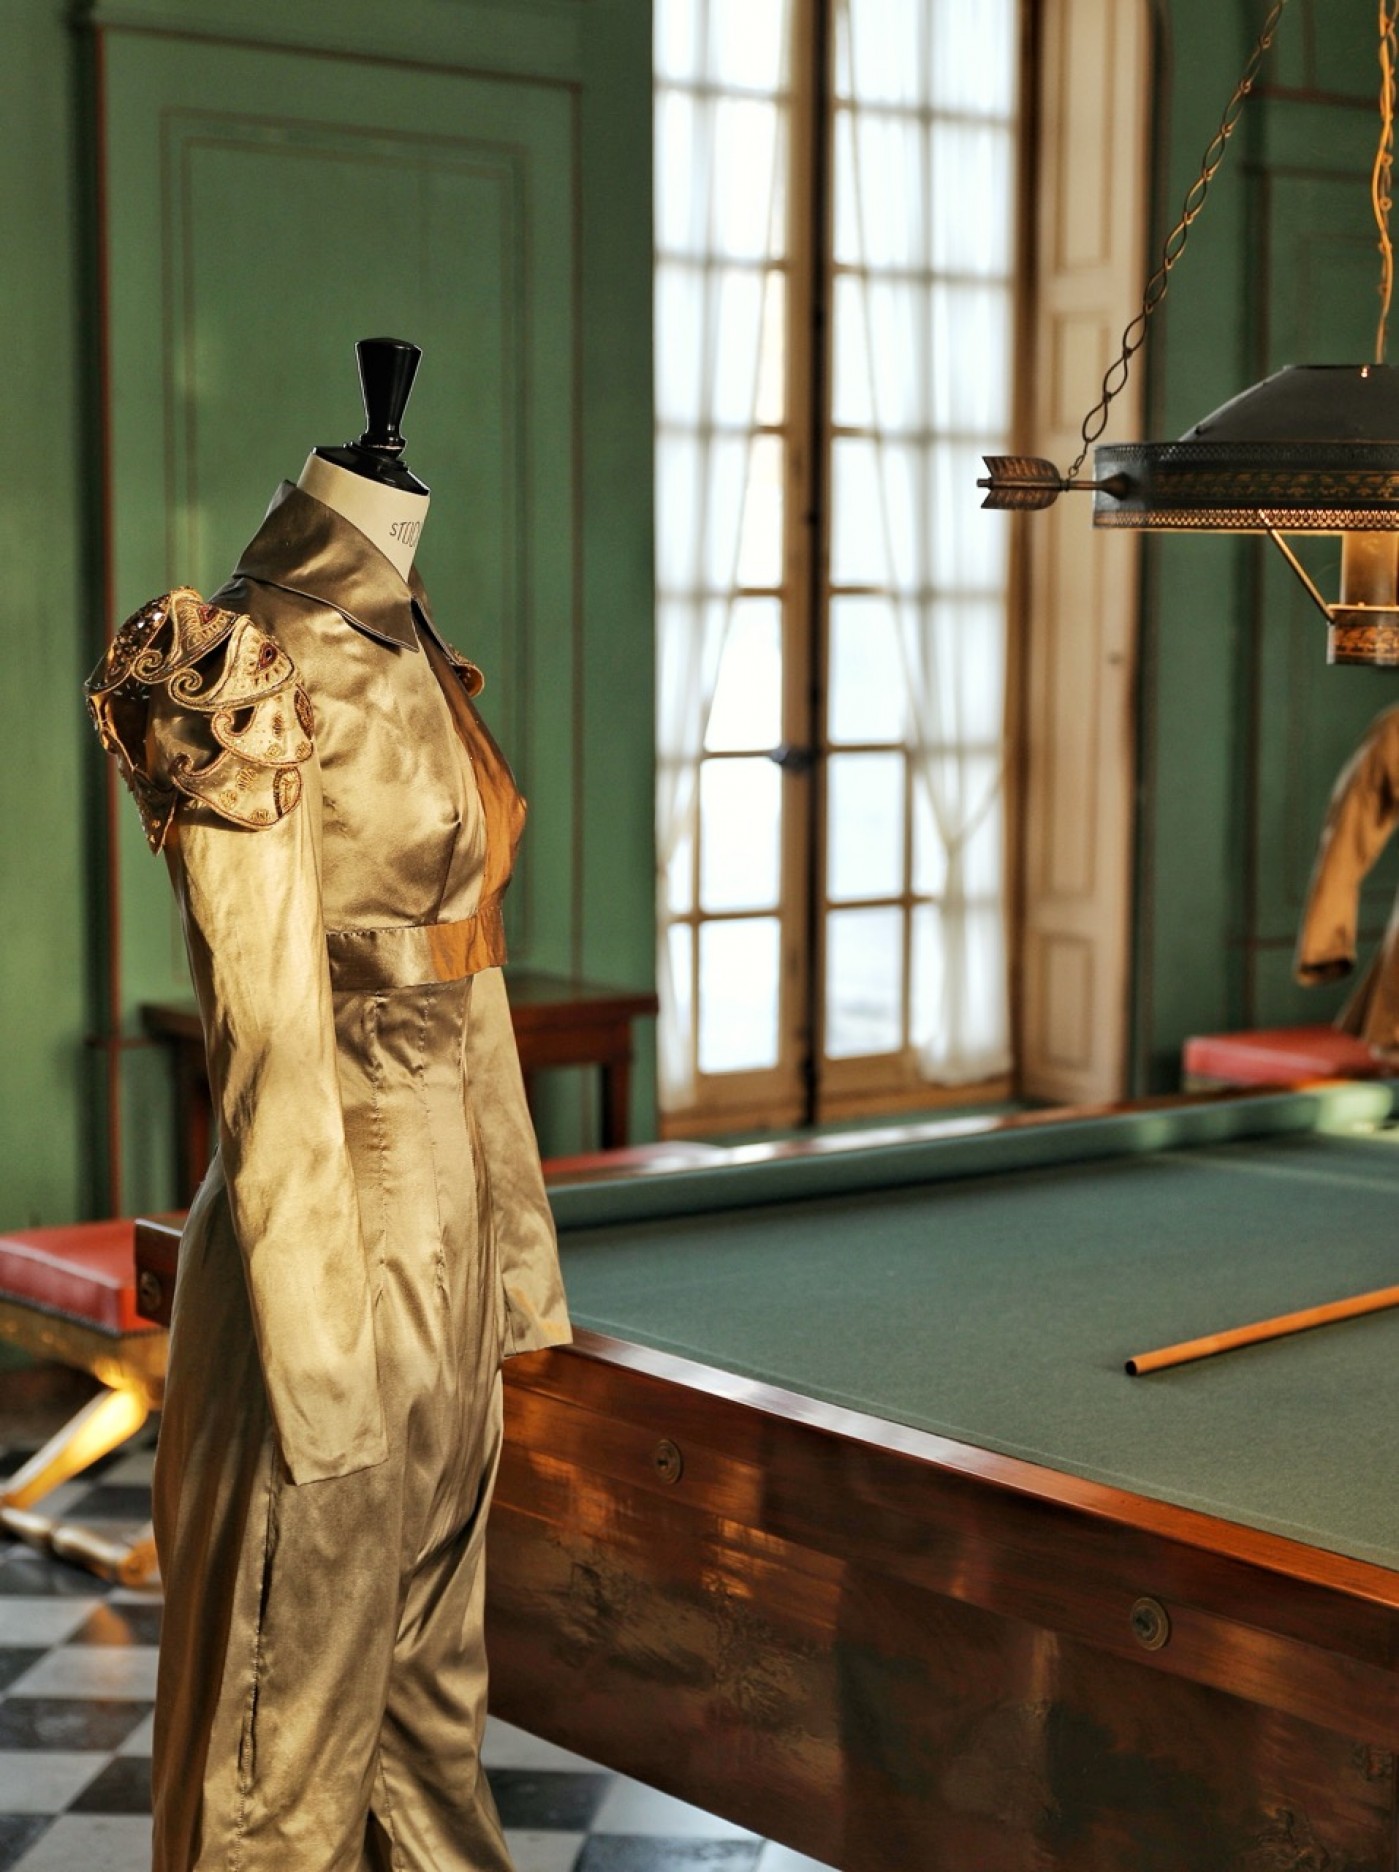 Un habit brodé d'or - Exposition au château de Malmaison jusqu'au 26 février
©Photographie Pierre Holley